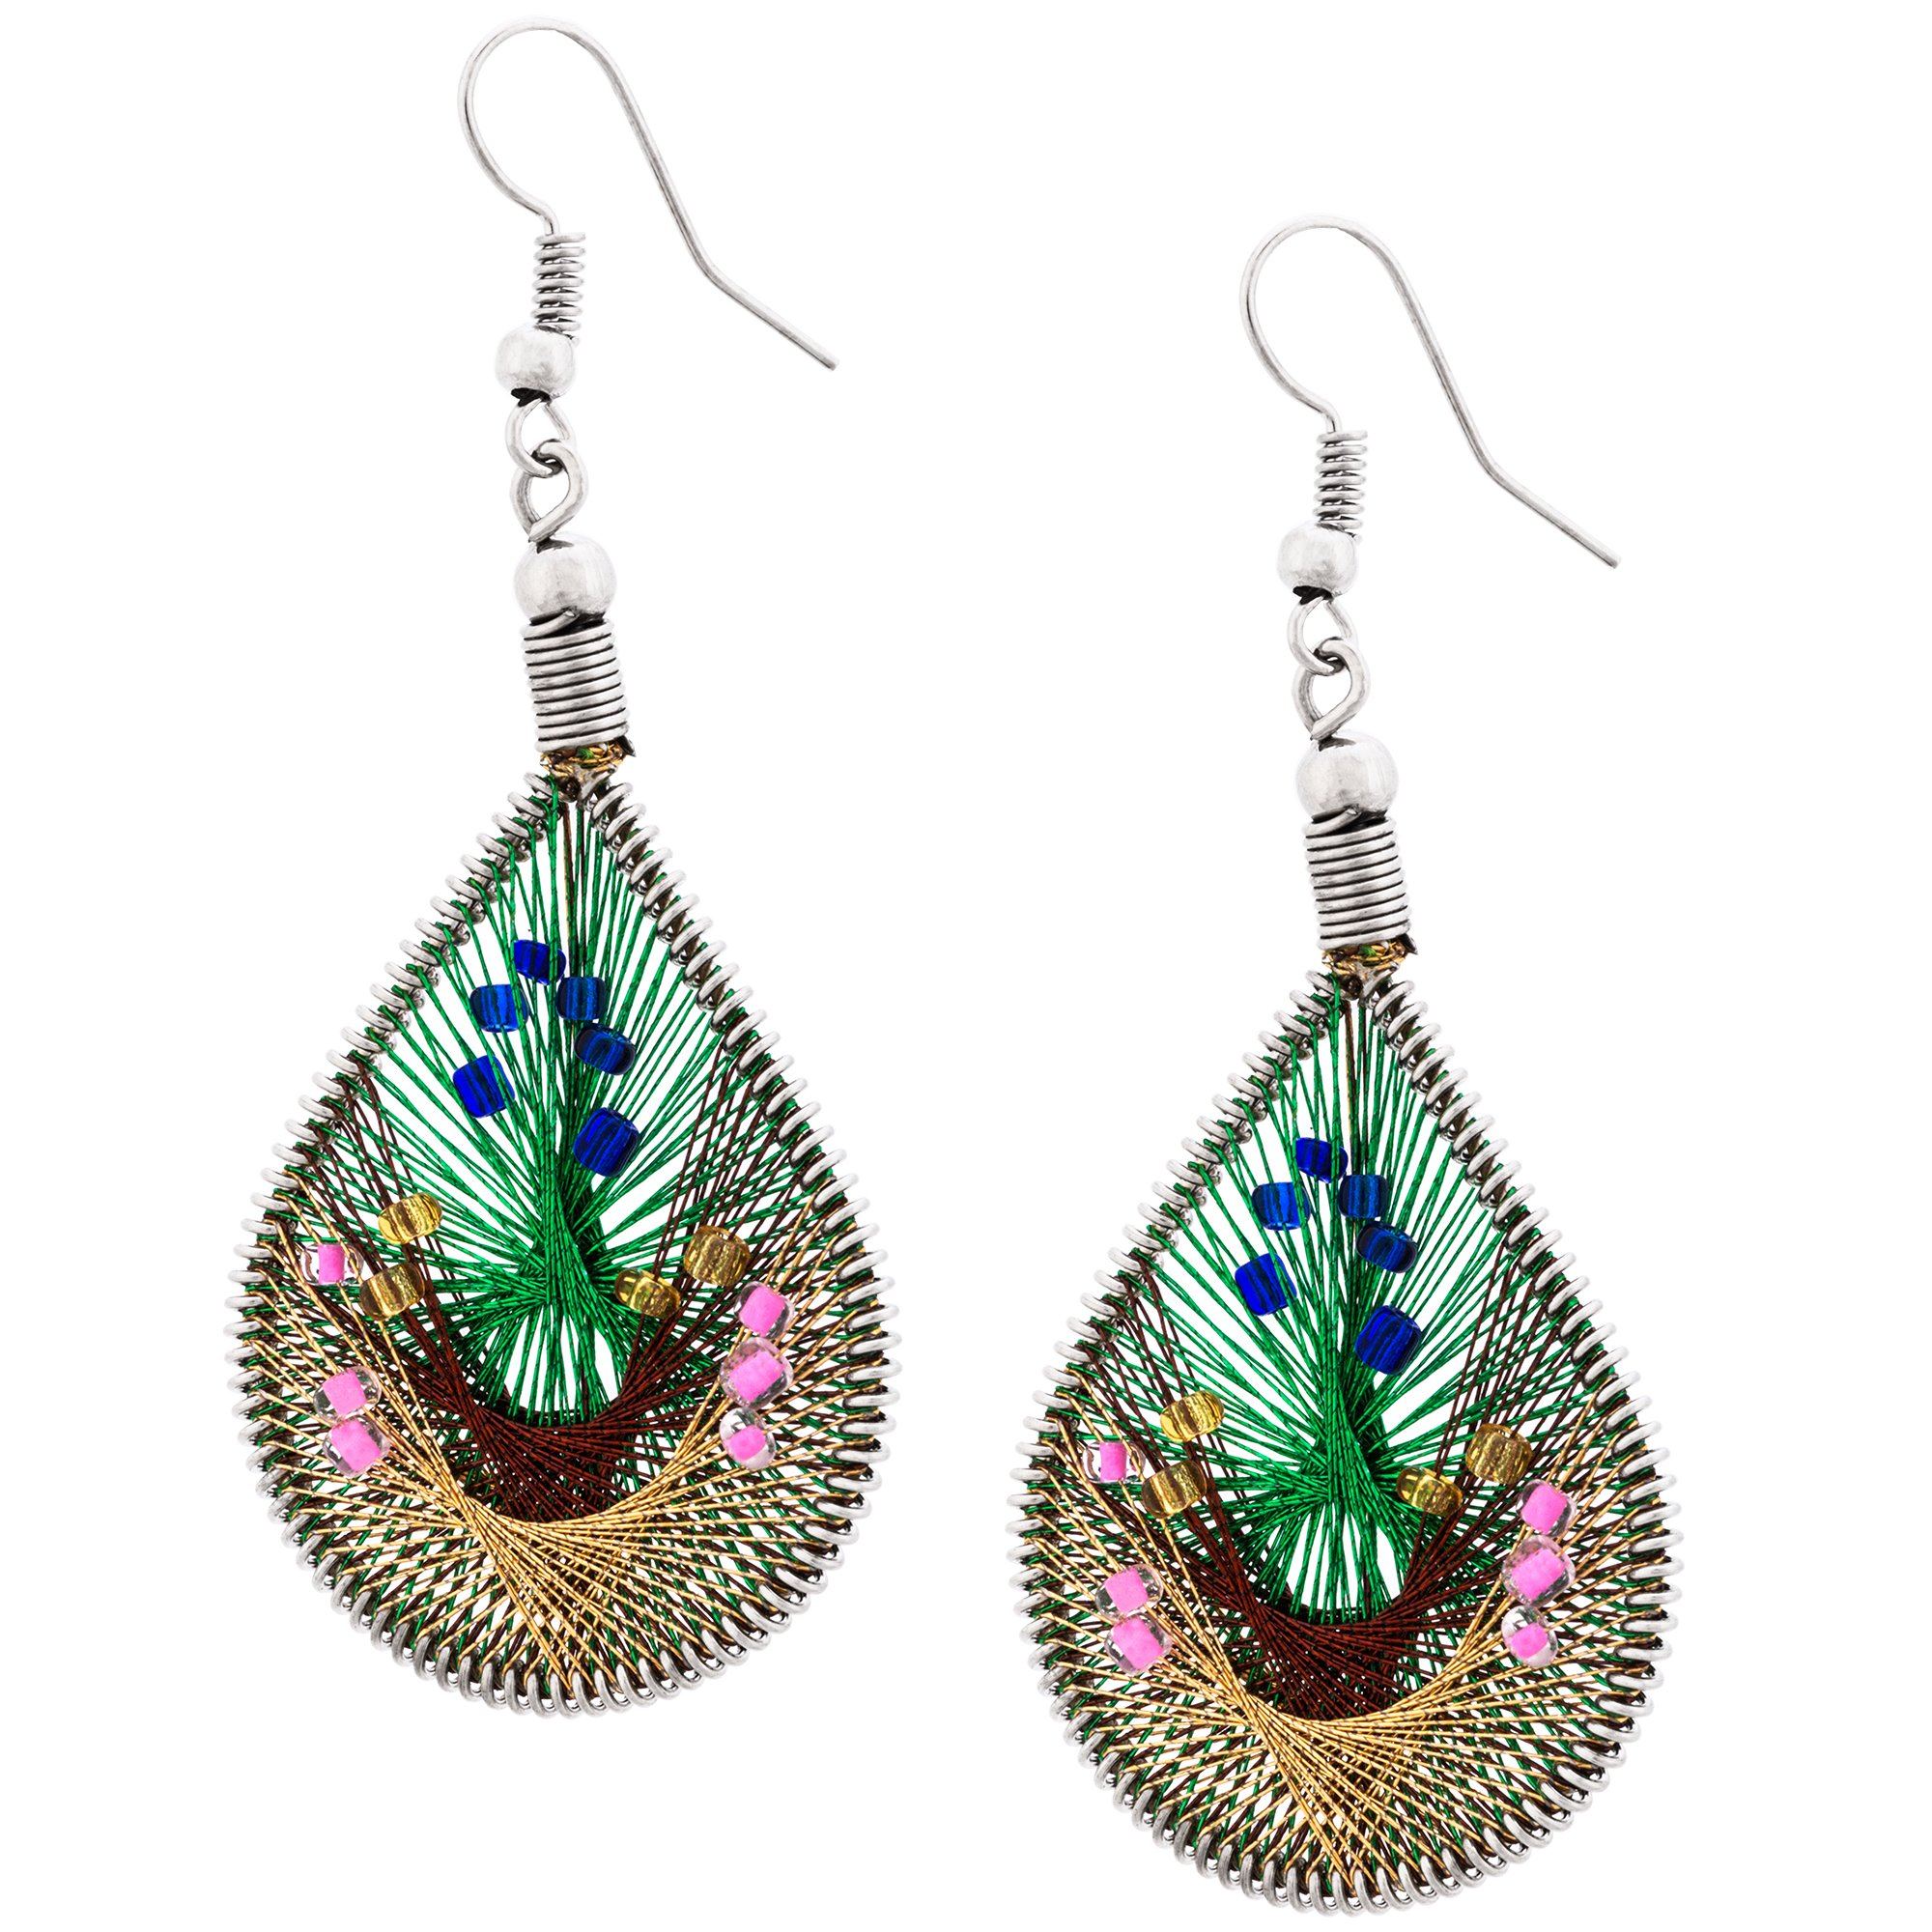 Art Of Thread Earrings - Emerald